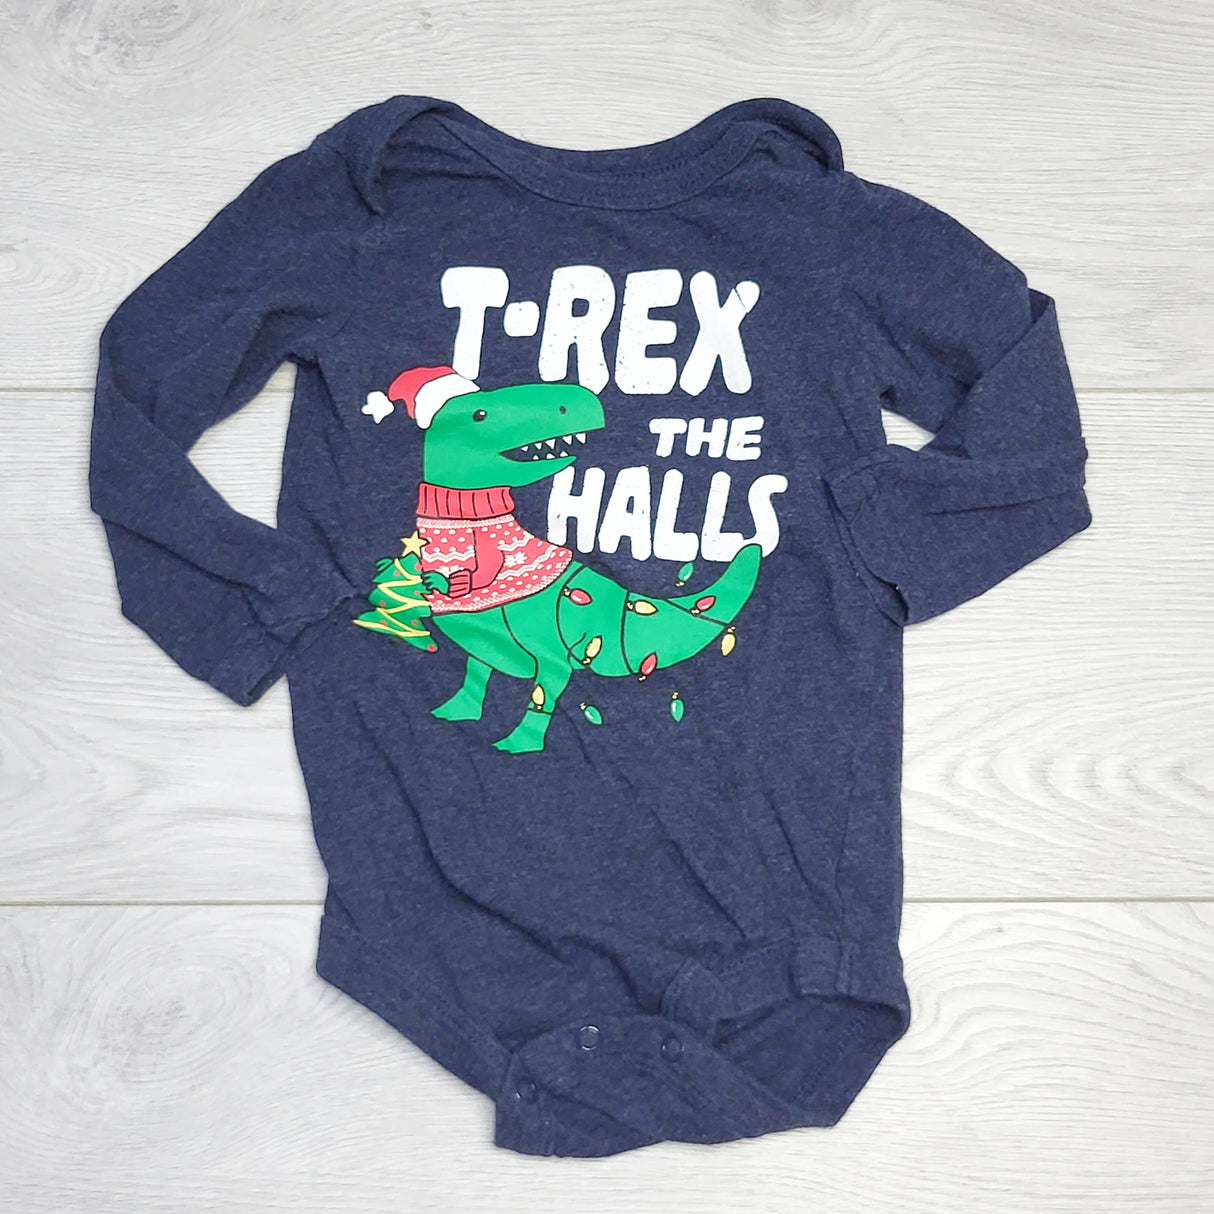 RZA2 - George "T-Rex the Halls" onesie. Size 12-18 months